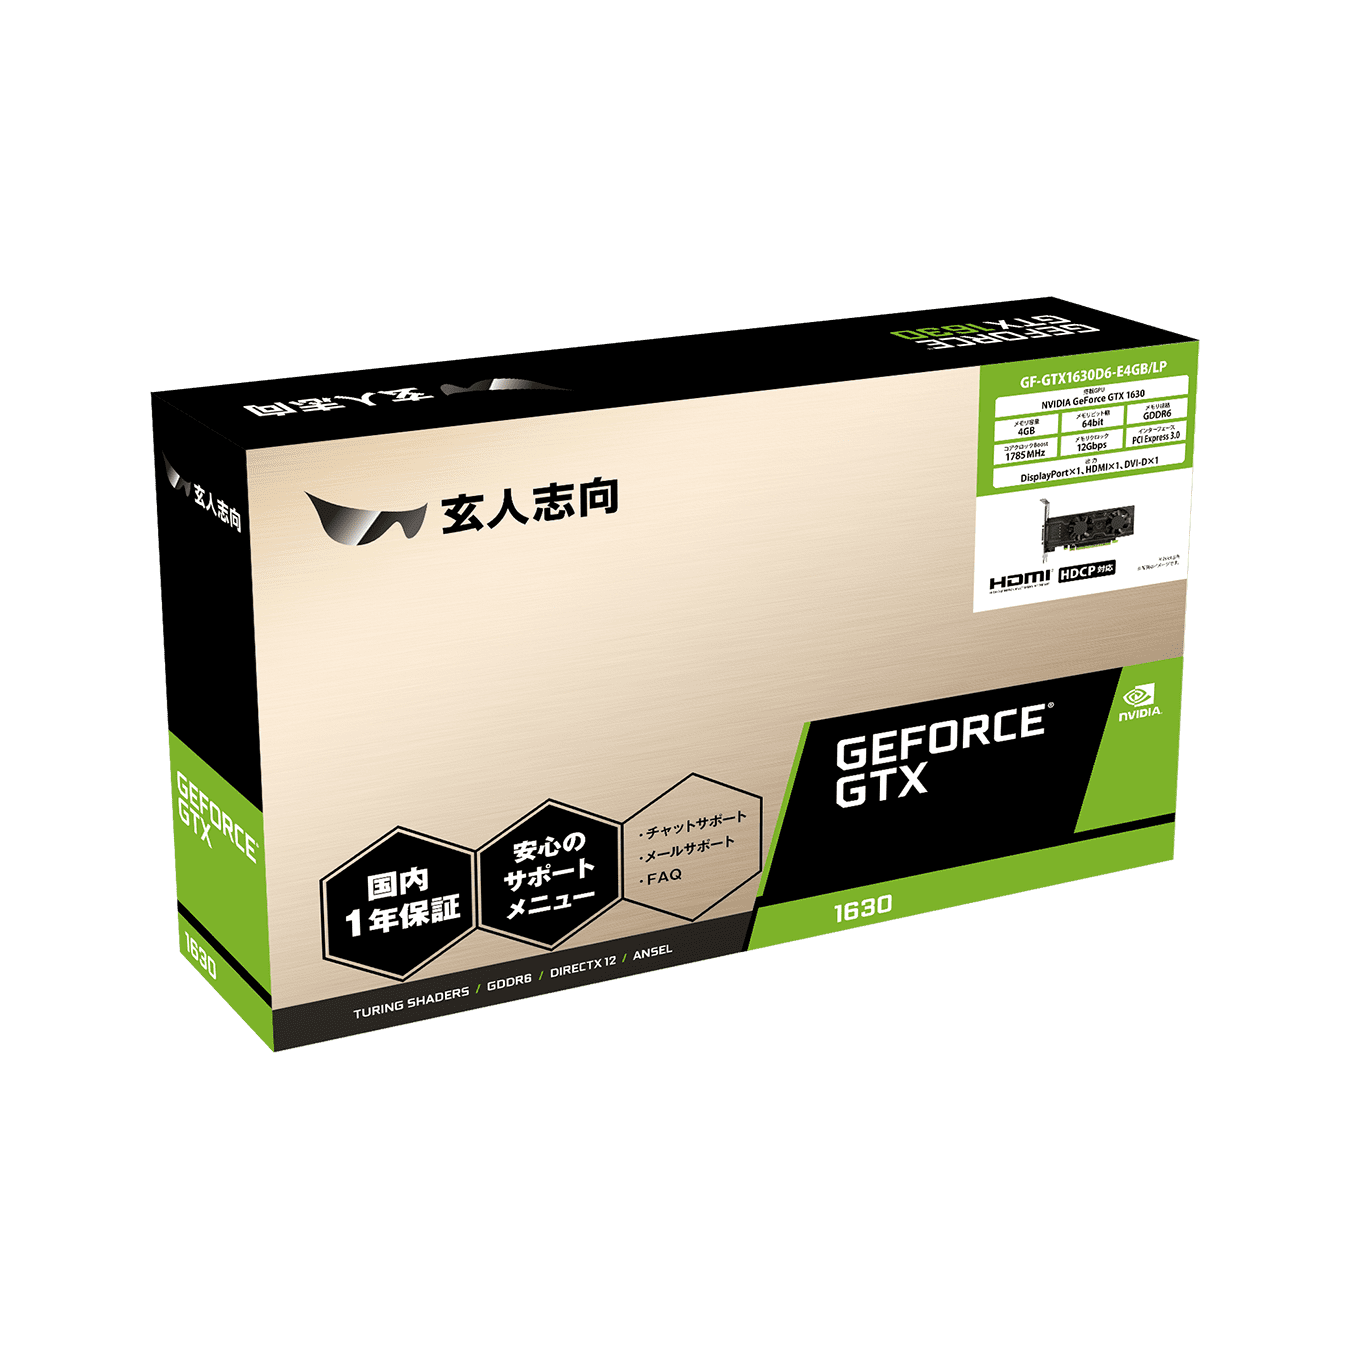 GF-GTX1630D6-E4GB/LP | 玄人志向 NVIDIA GeForce GTX 1630